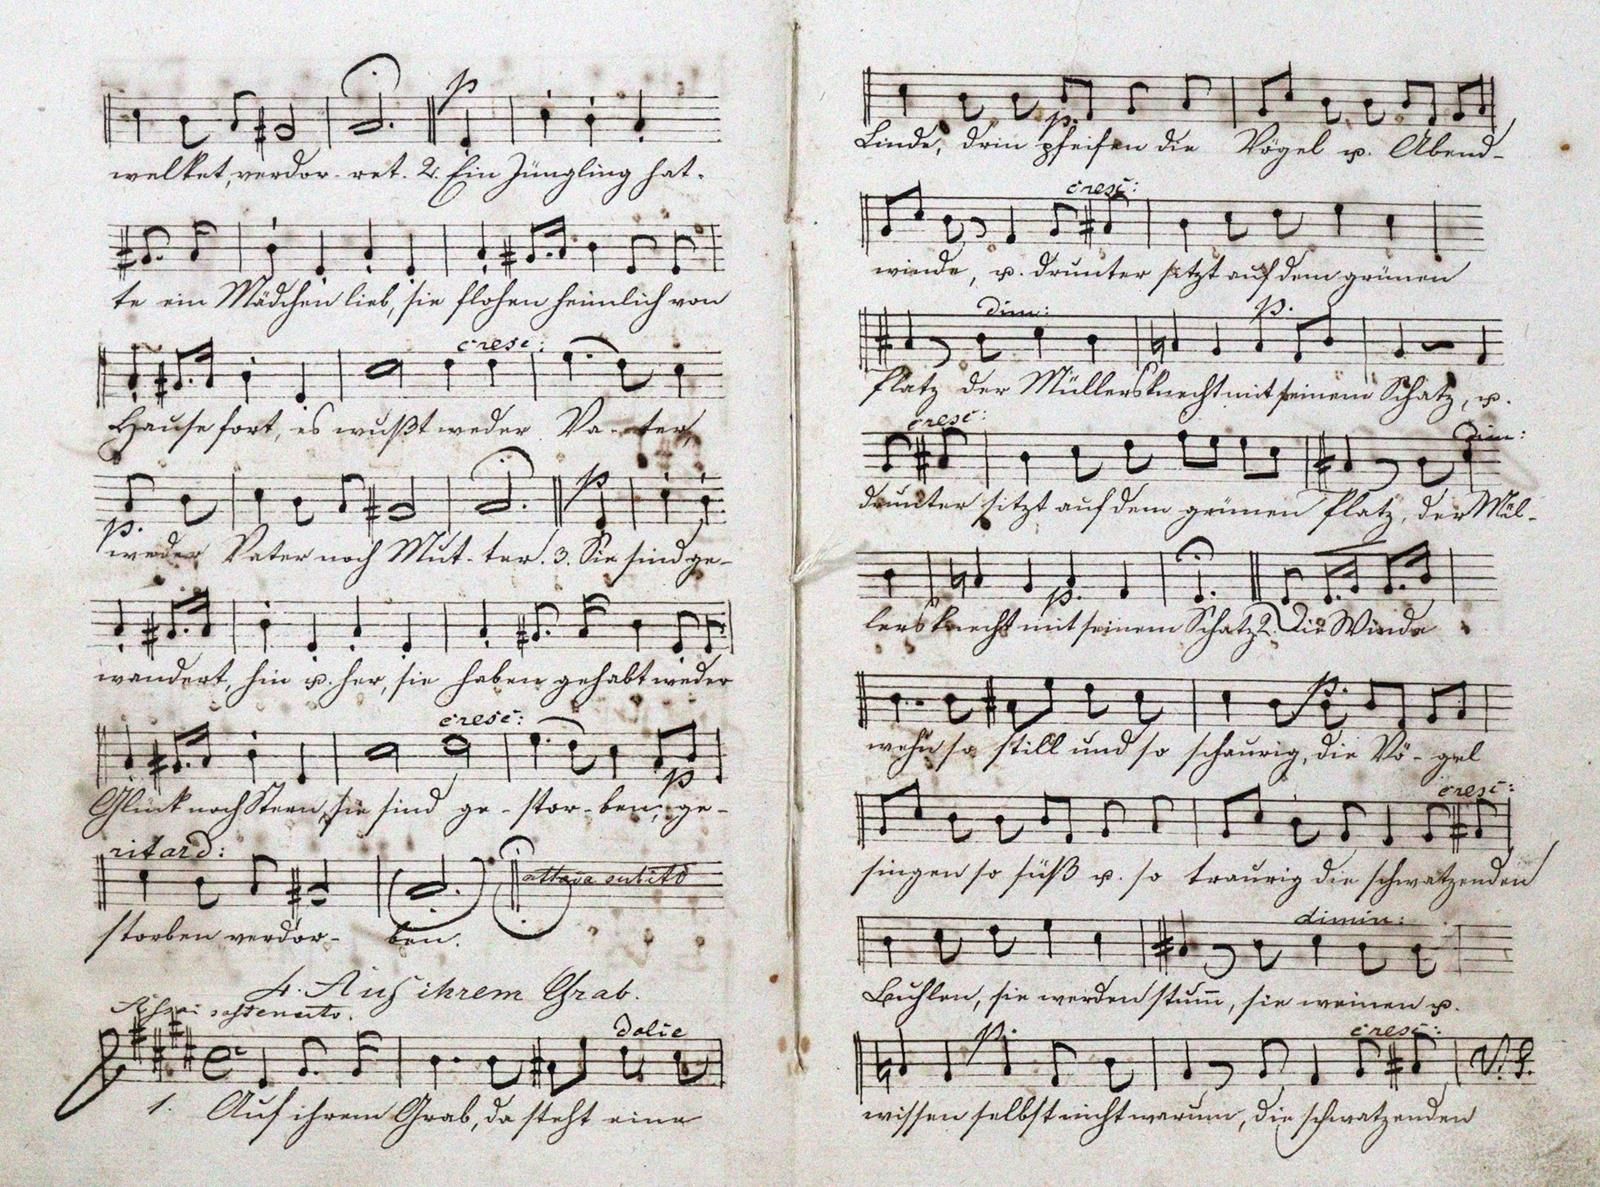 Papst,W. Canciones para soprano, contralto, tenor y bajo, compuestas por Felix M&hellip;